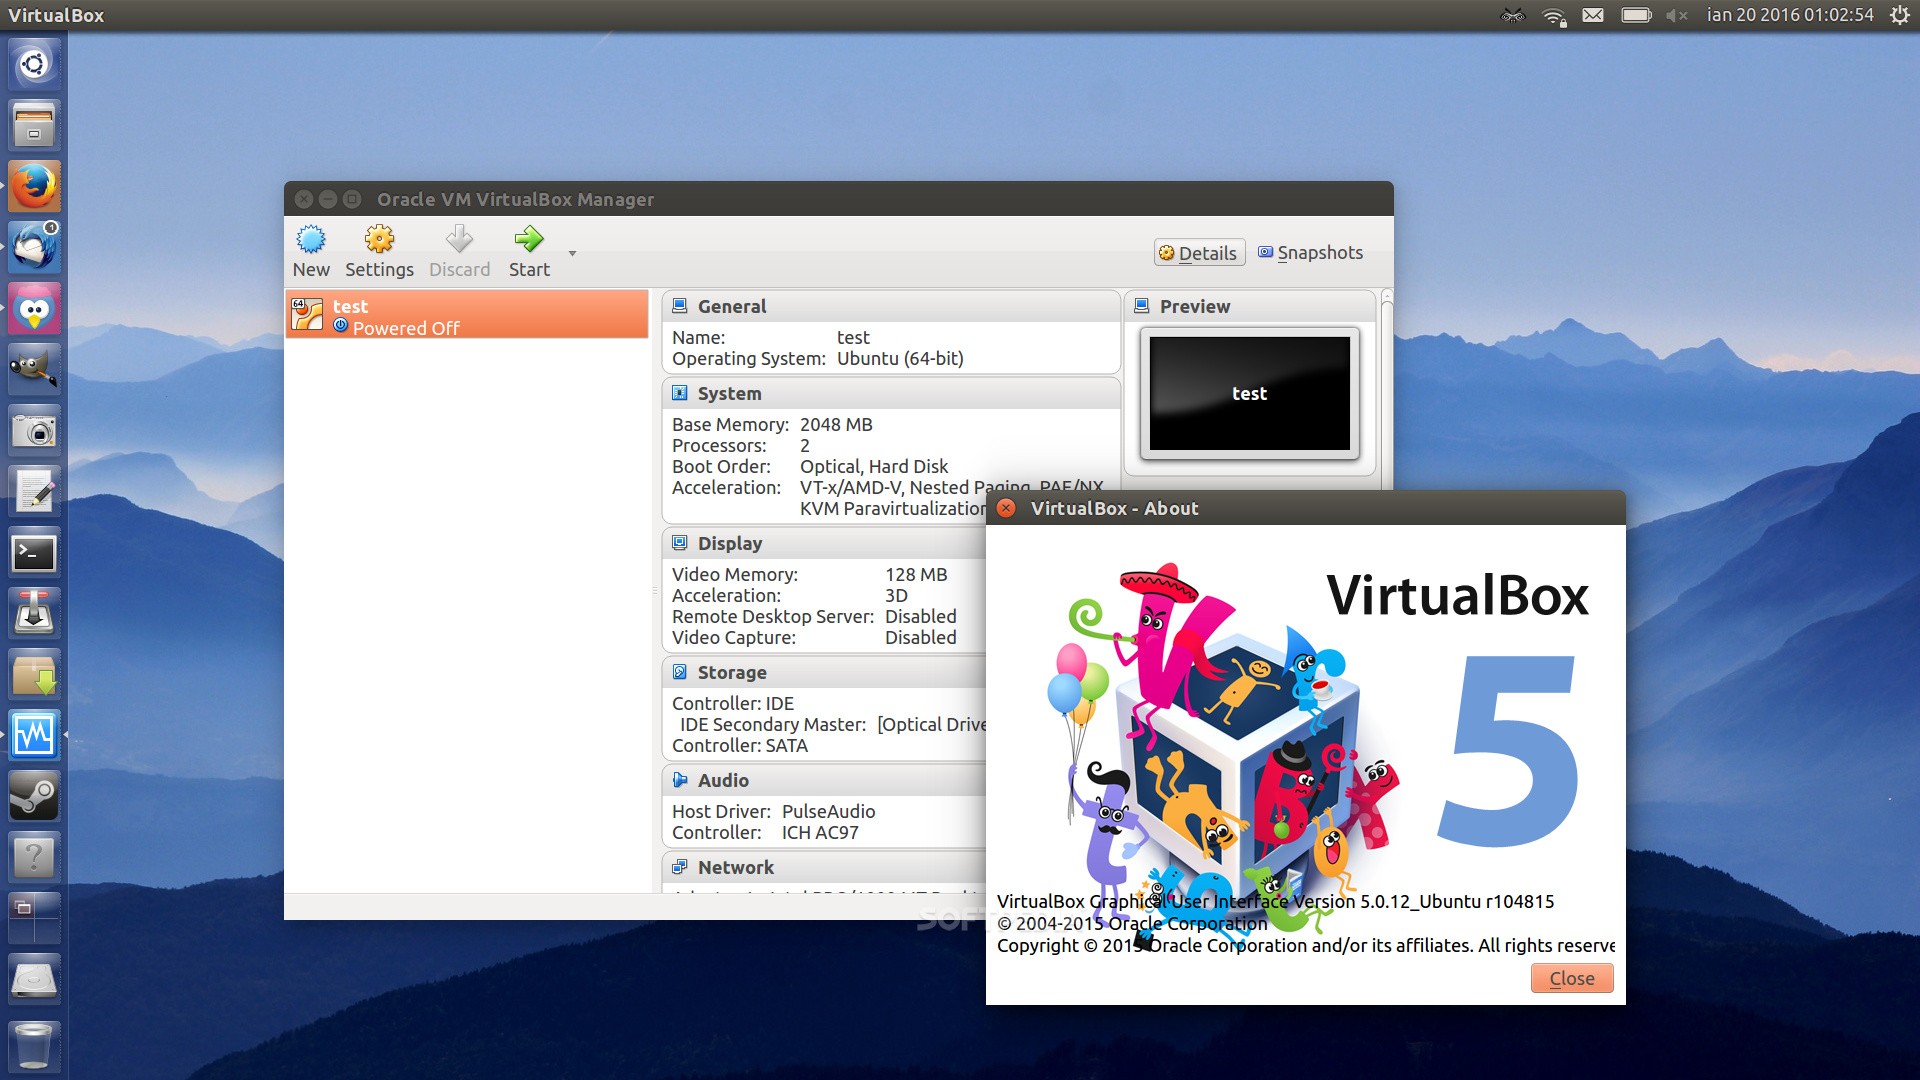 virtualbox windows image download